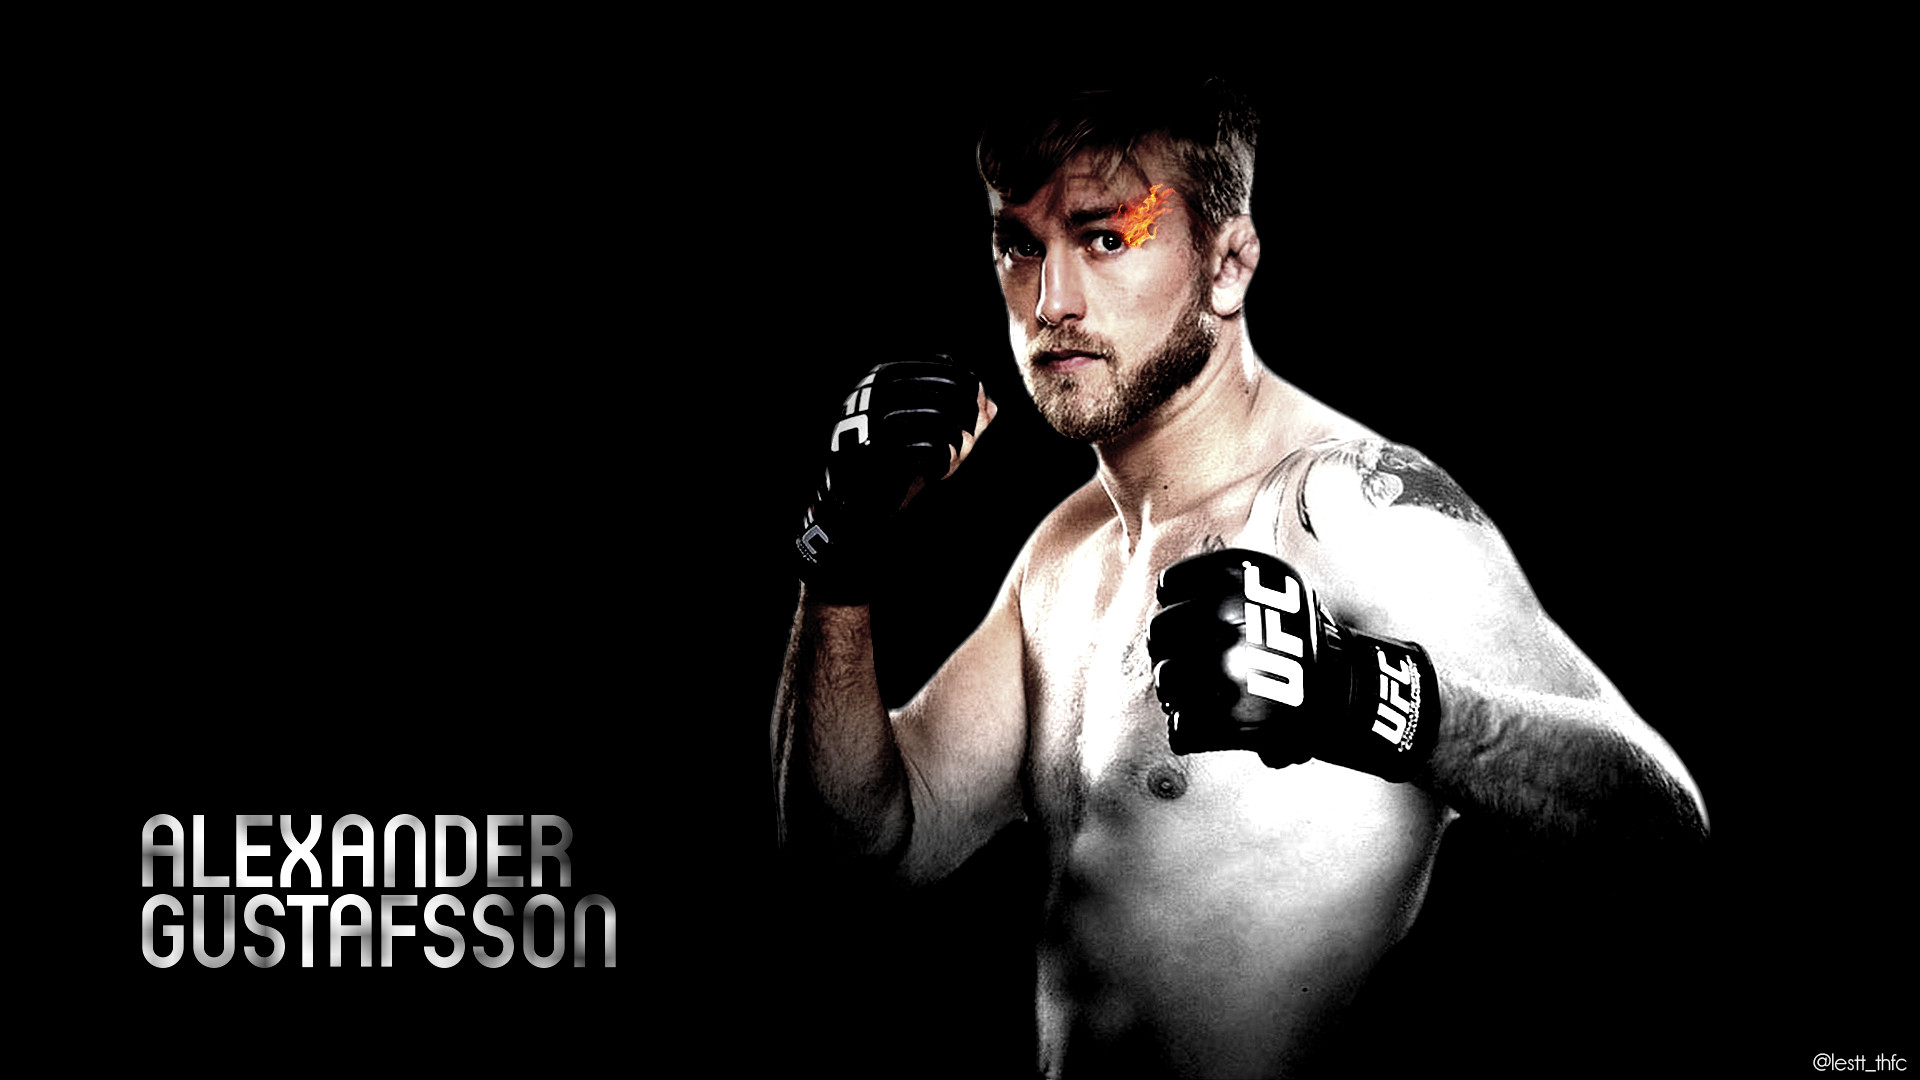 1920x1080 ... Wallpaper - Alexander Gustafsson (UFC Fighter) by dunkakis